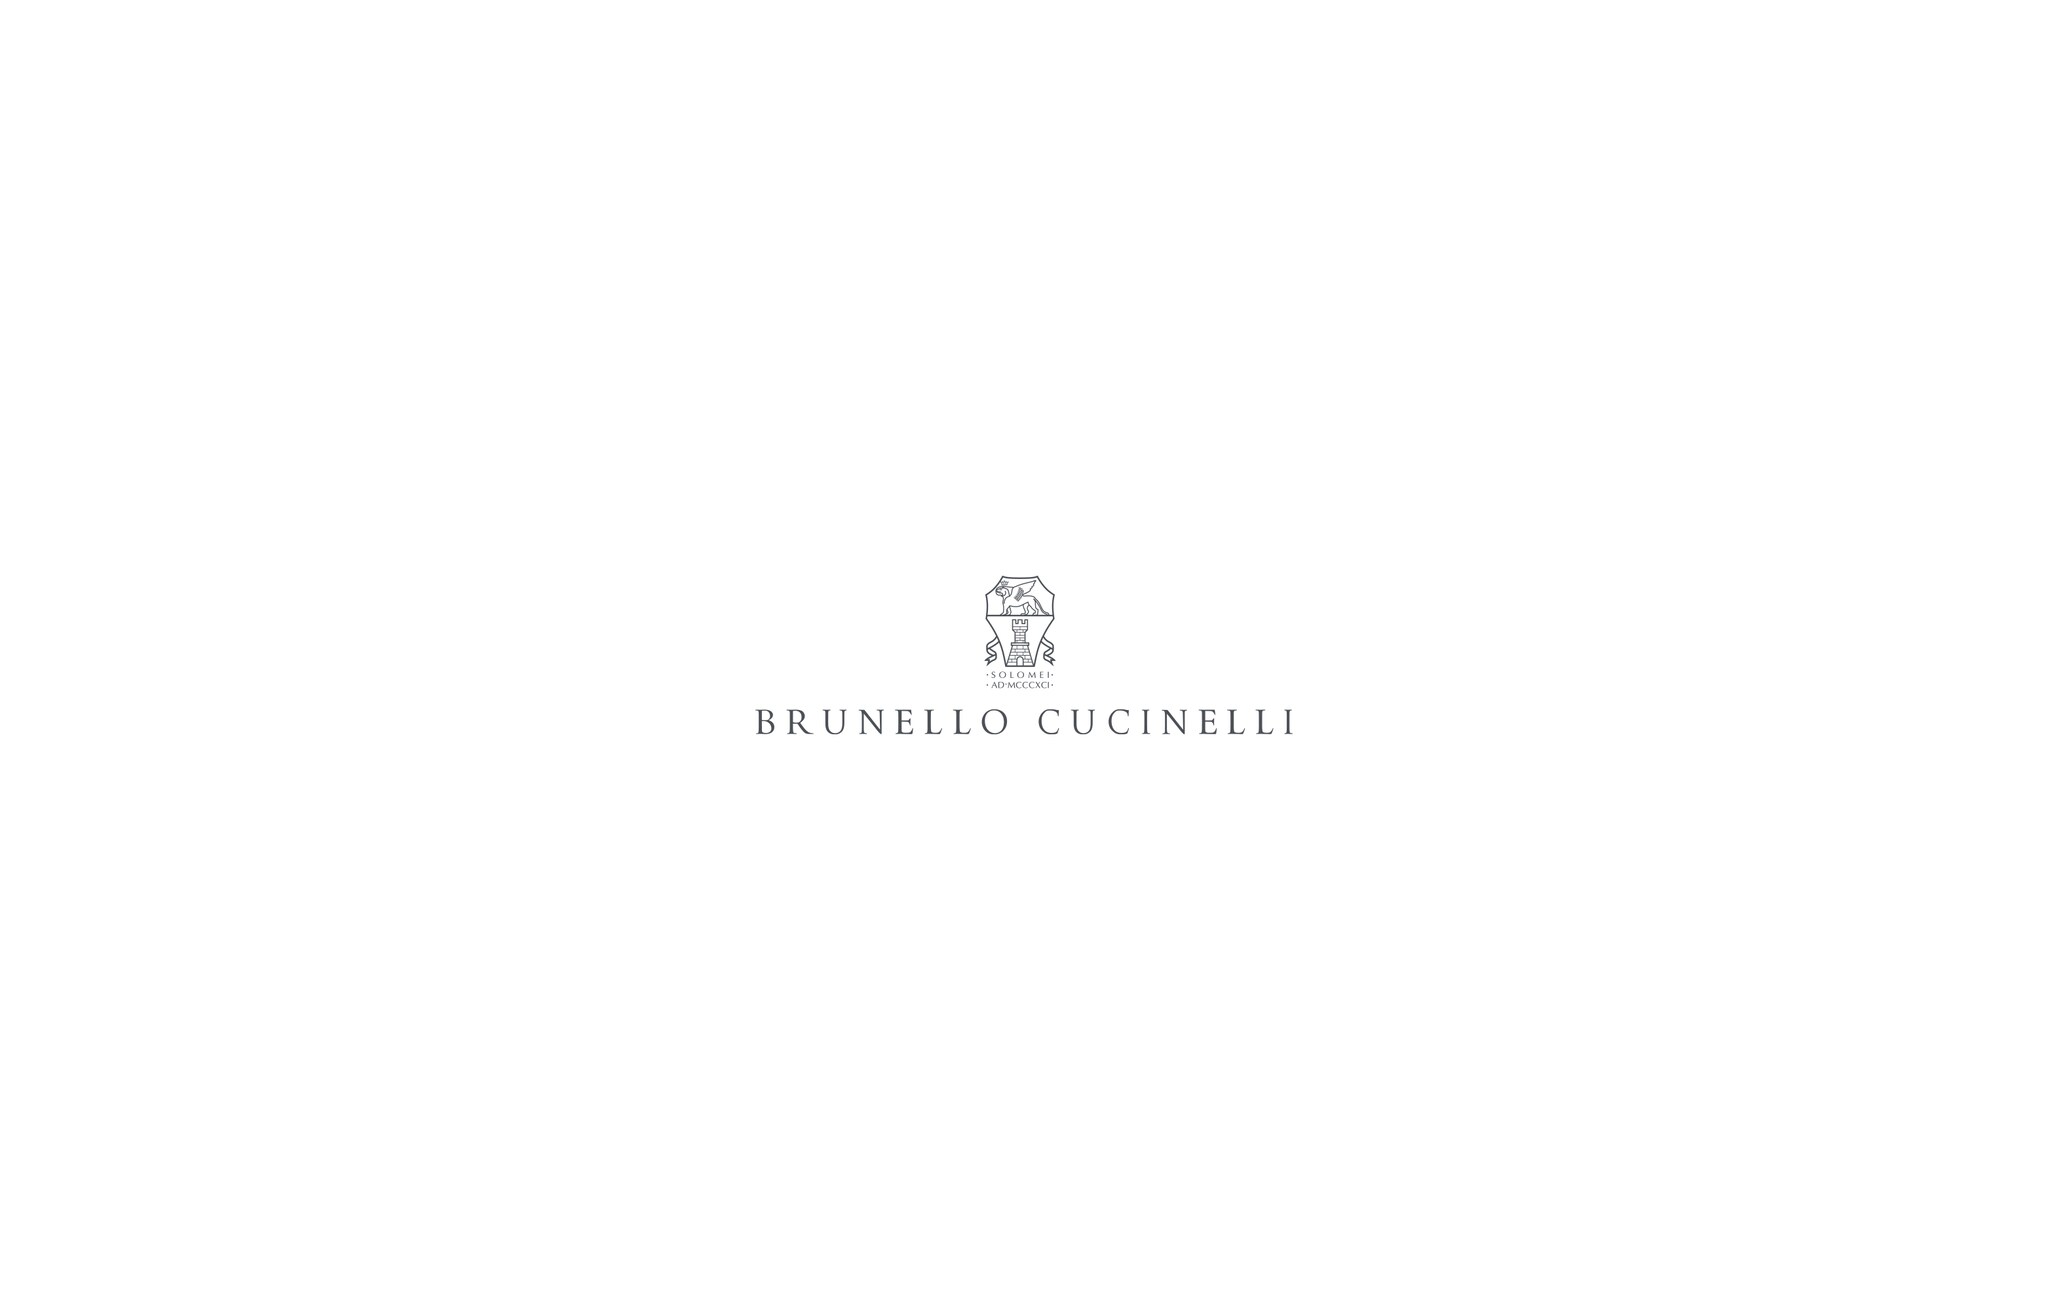  カシミヤストール コブルストーン メンズ - Brunello Cucinelli 